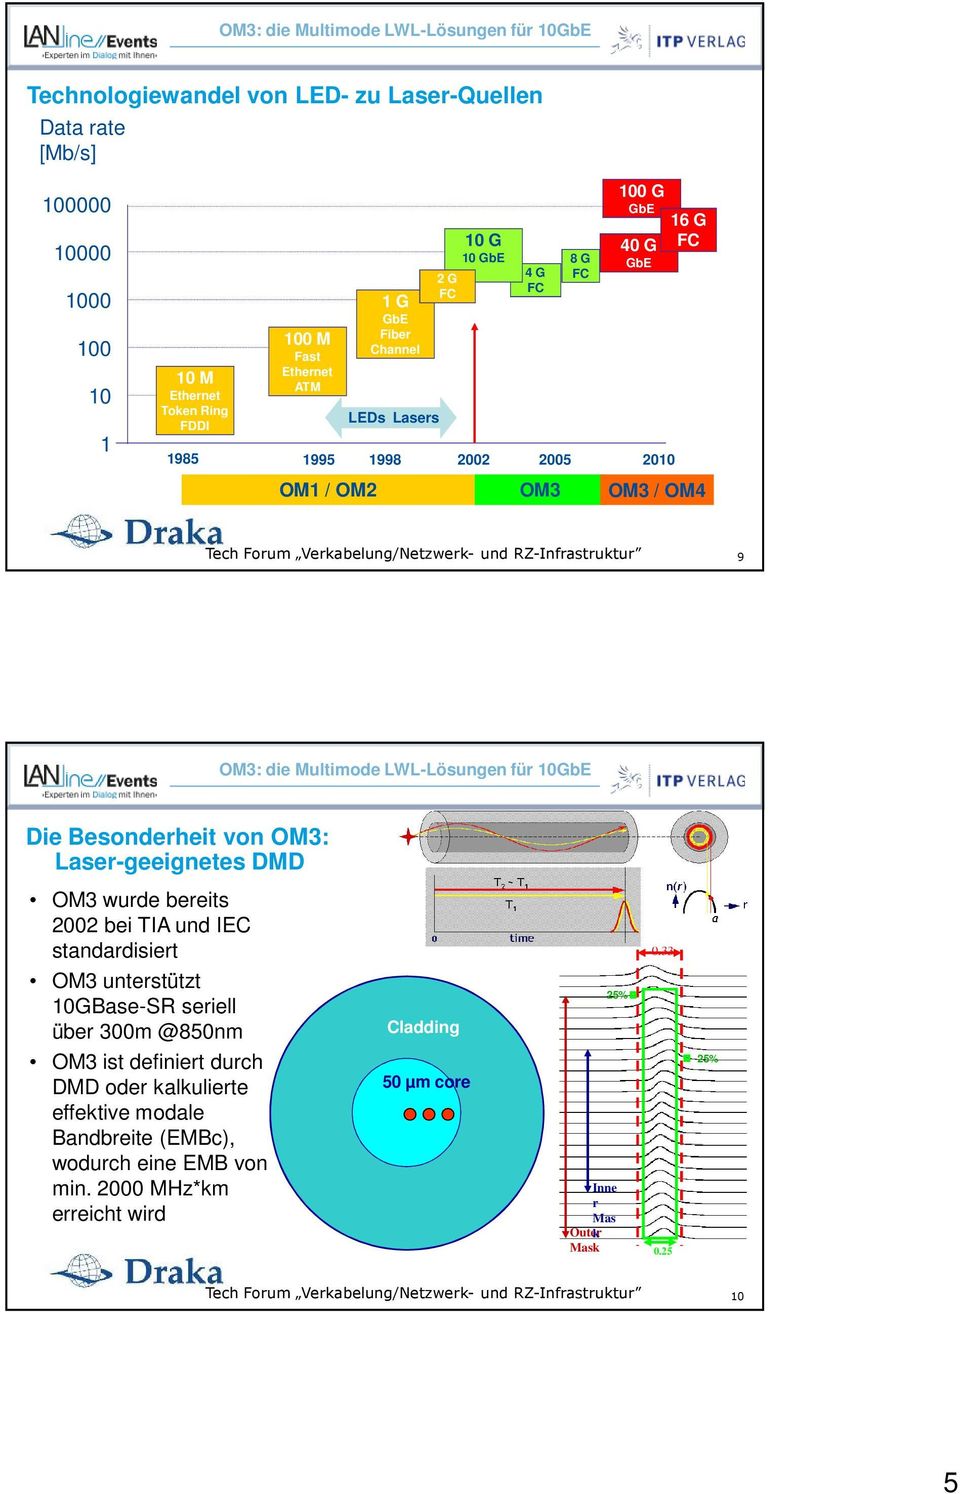 LWL-Lösungen für 10GbE Die Besonderheit von OM3: Laser-geeignetes DMD OM3 wurde bereits 2002 bei TIA und IEC standardisiert OM3 unterstützt 10GBase-SR seriell über 300m @850nm OM3